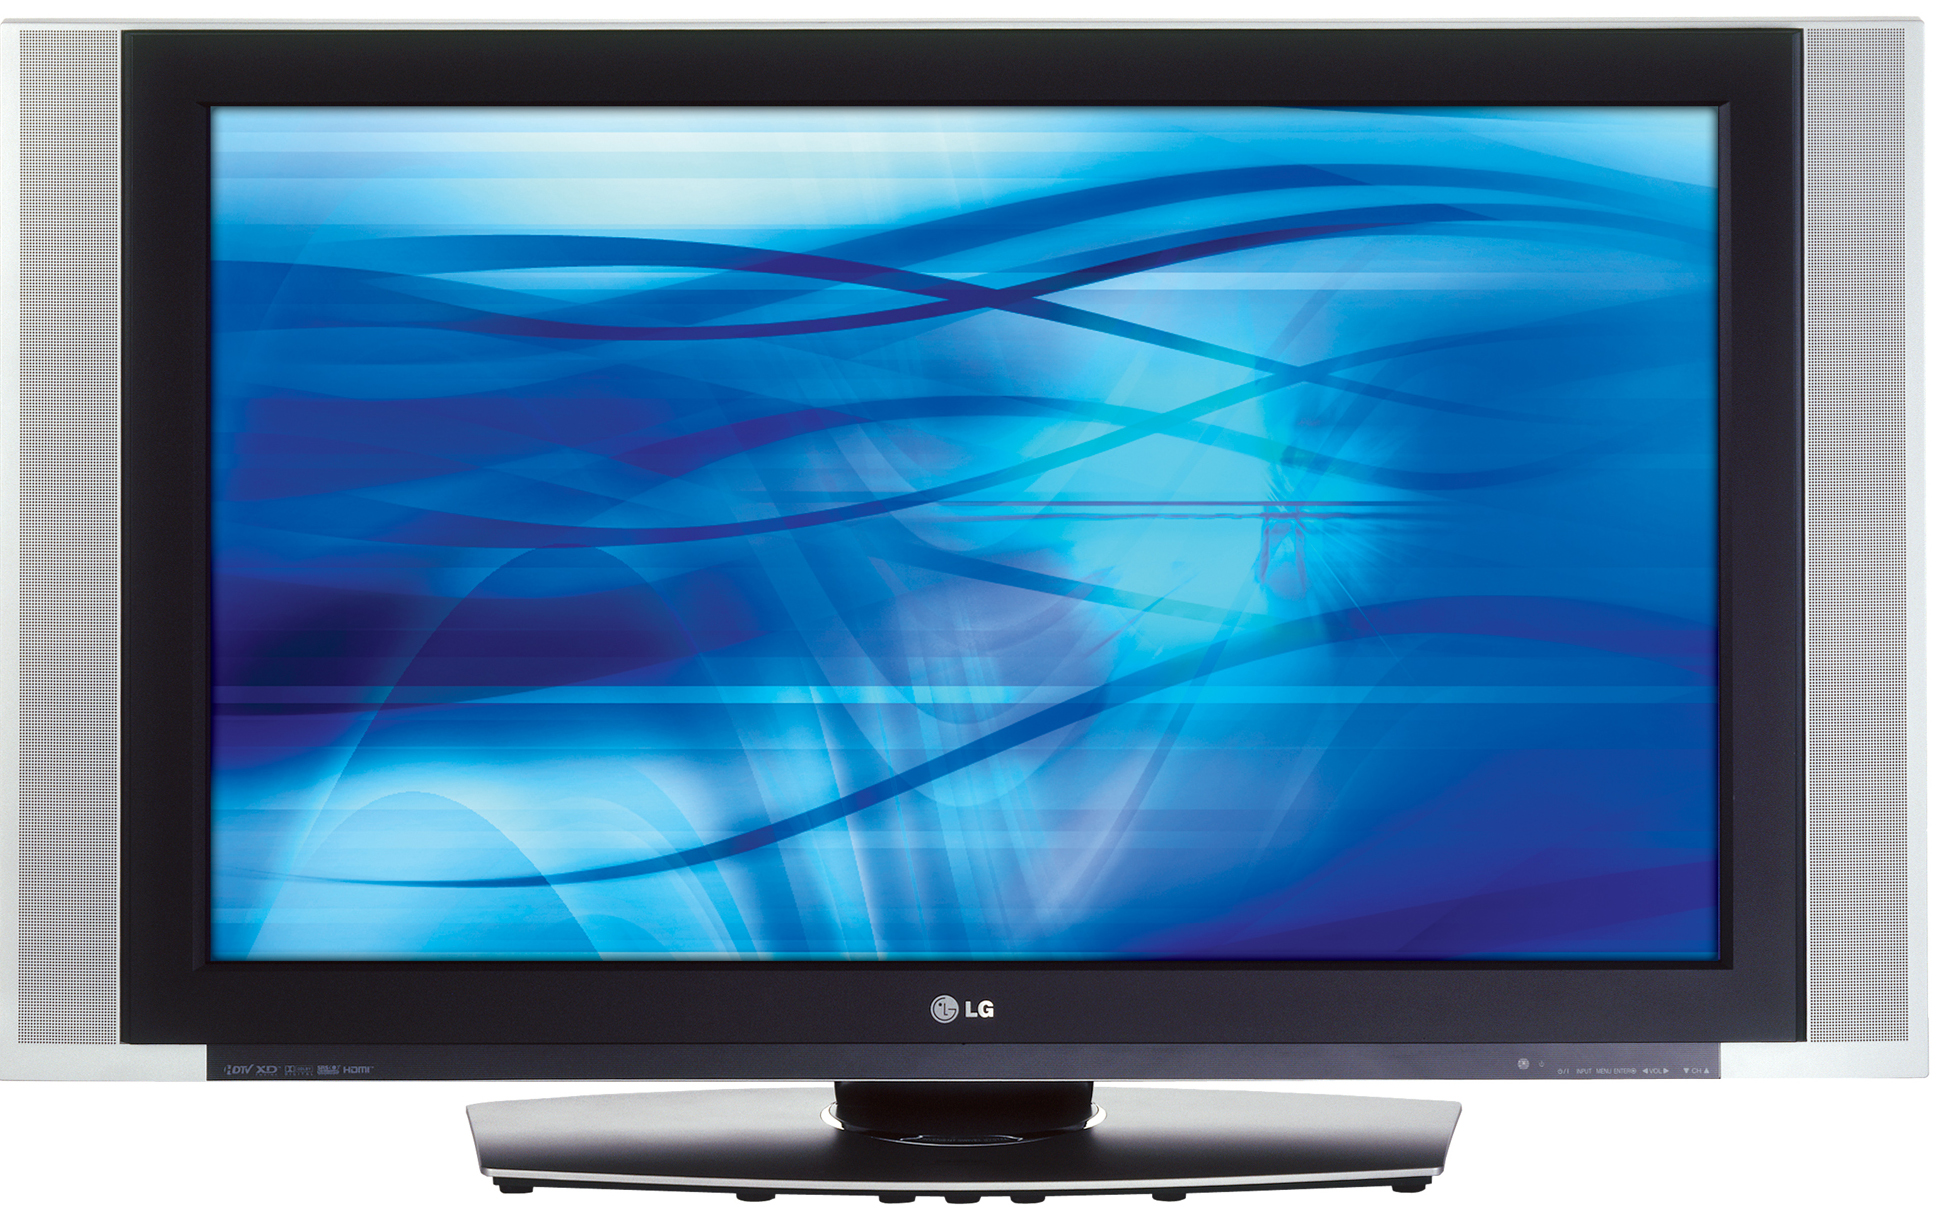 LG 42PX7DC 42 inch HDTV Plasma Tv lg 42px7dc